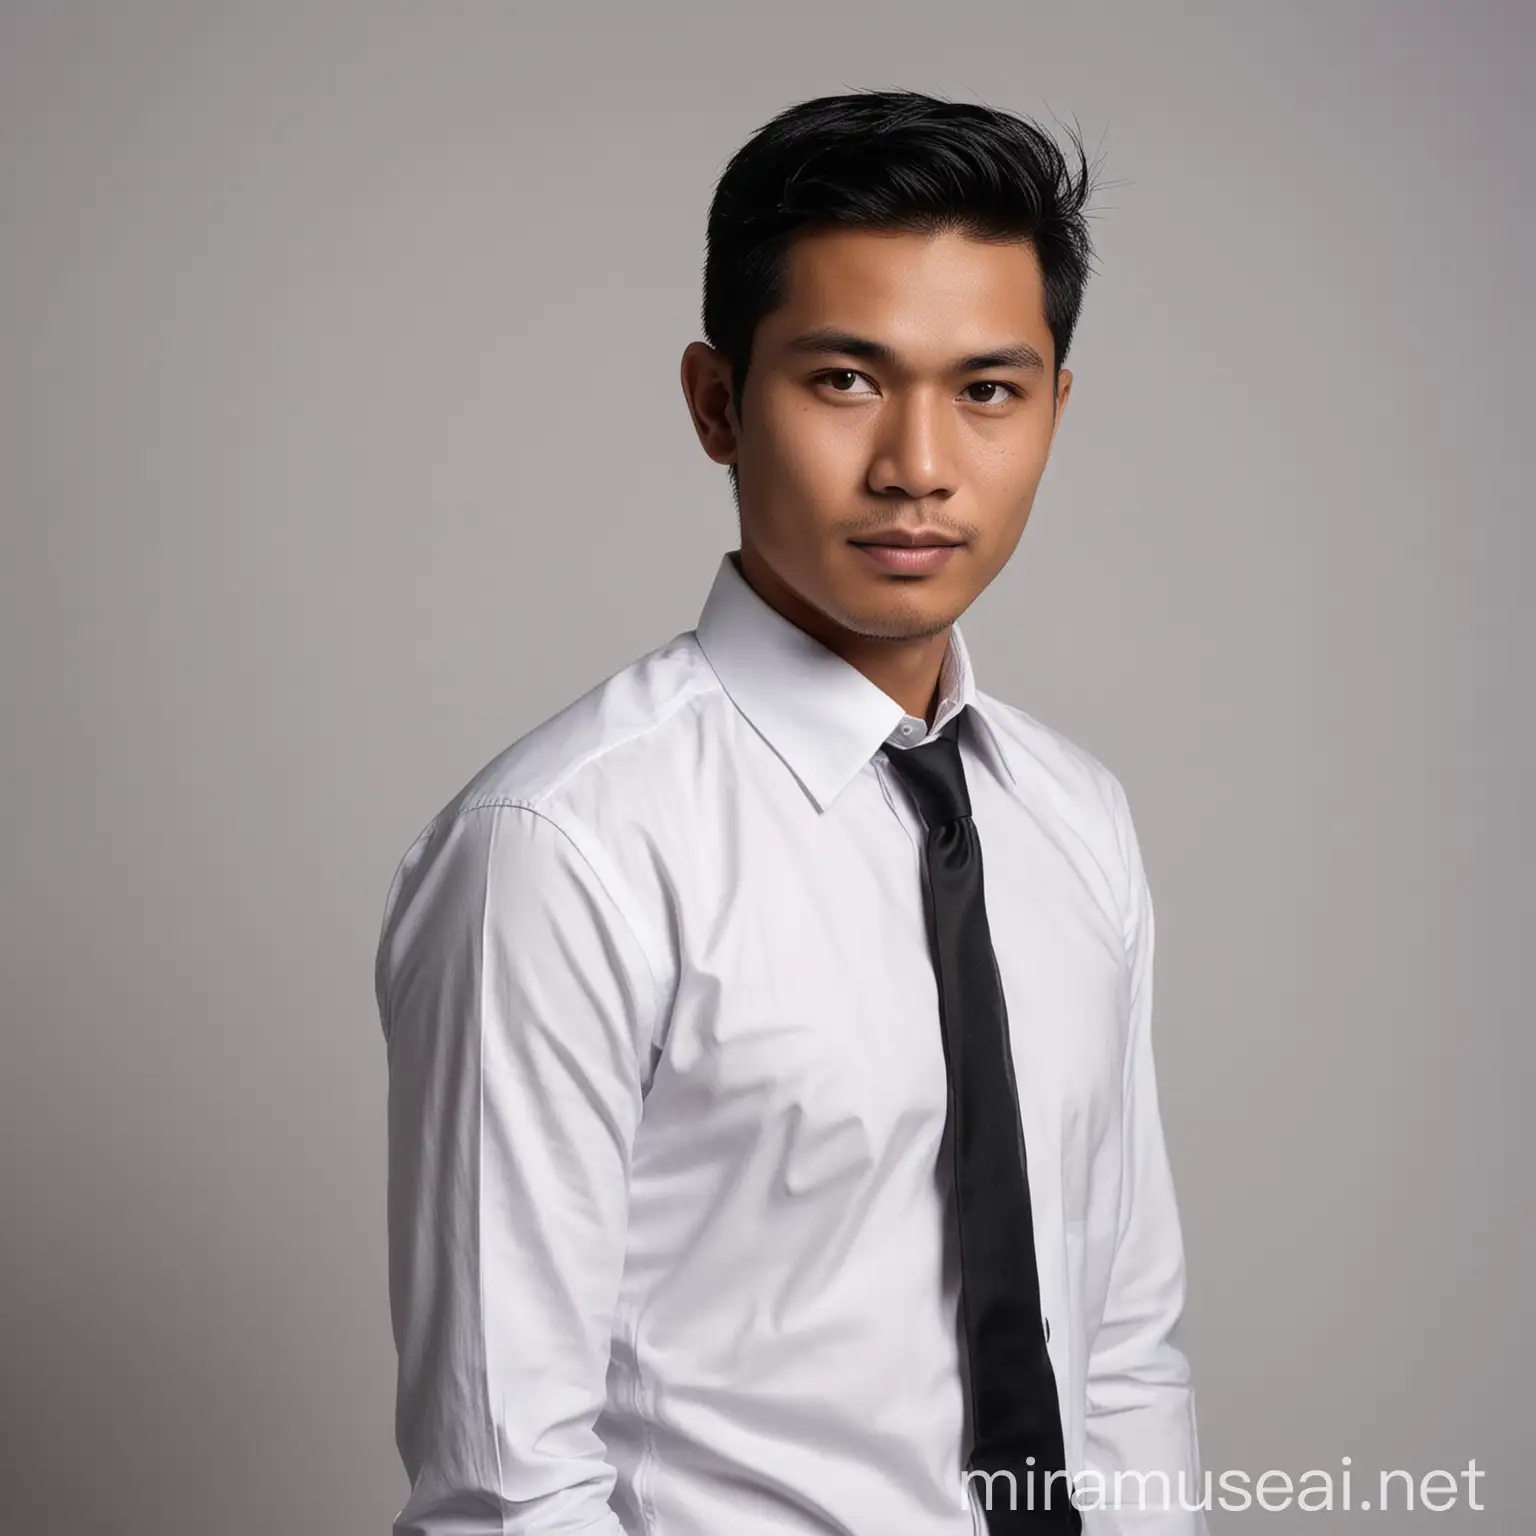 Pas foto formal, laki-laki indonesia usia 30 tahun, rambut pendek rapih, memakai kemeja putih dan dasi warna hitam, pose bada sedikit condong ke bagian kanan, uhd